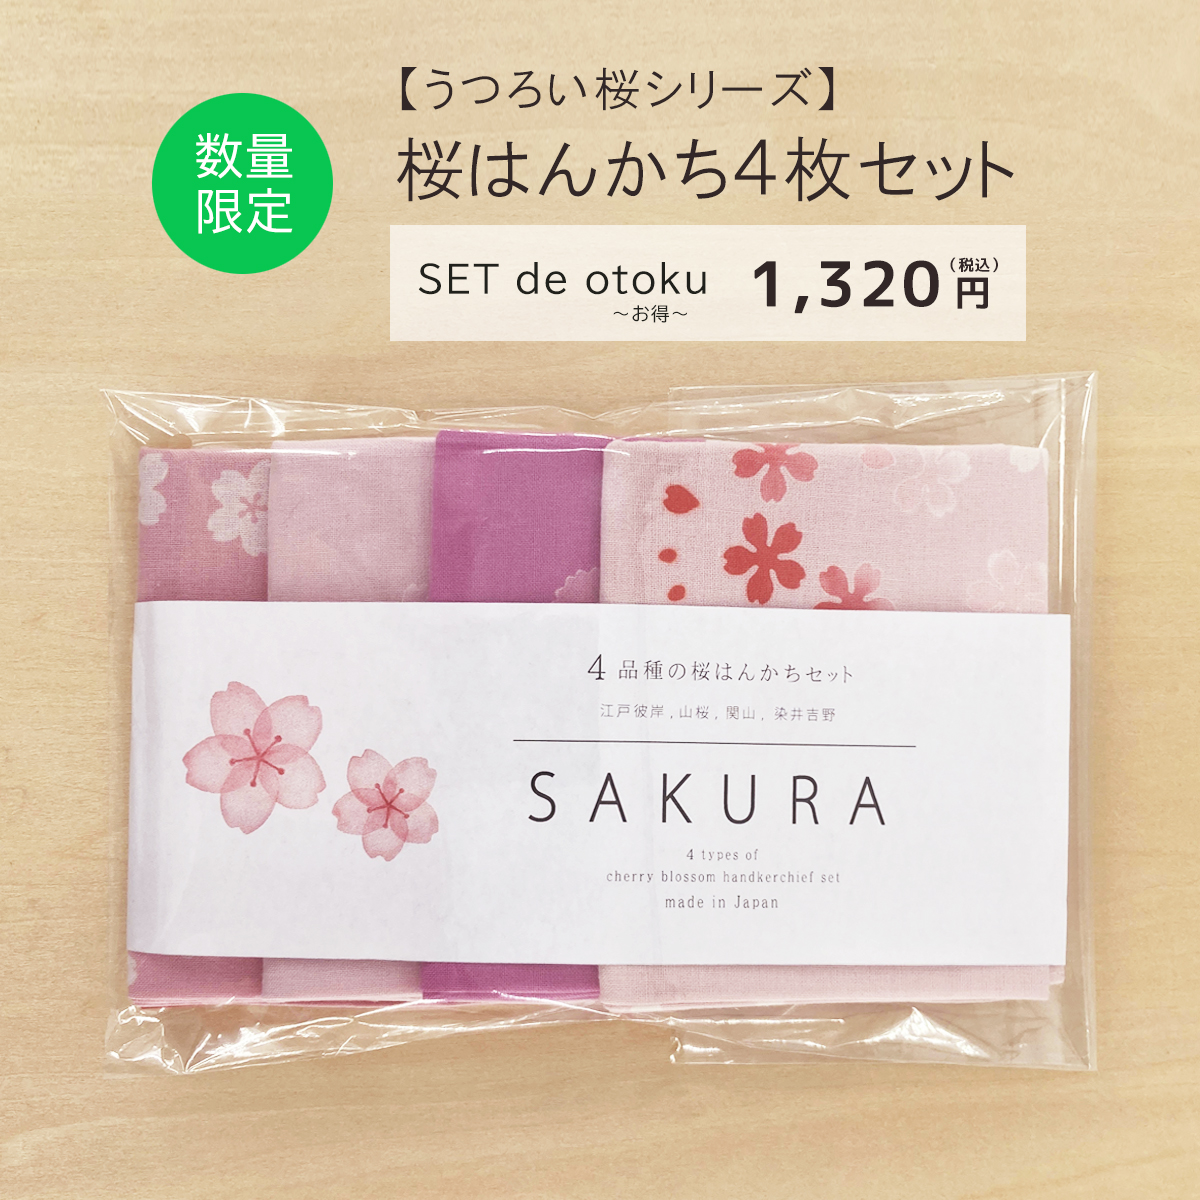 【SET de otoku〜お得〜】うつろい桜はんかちセット